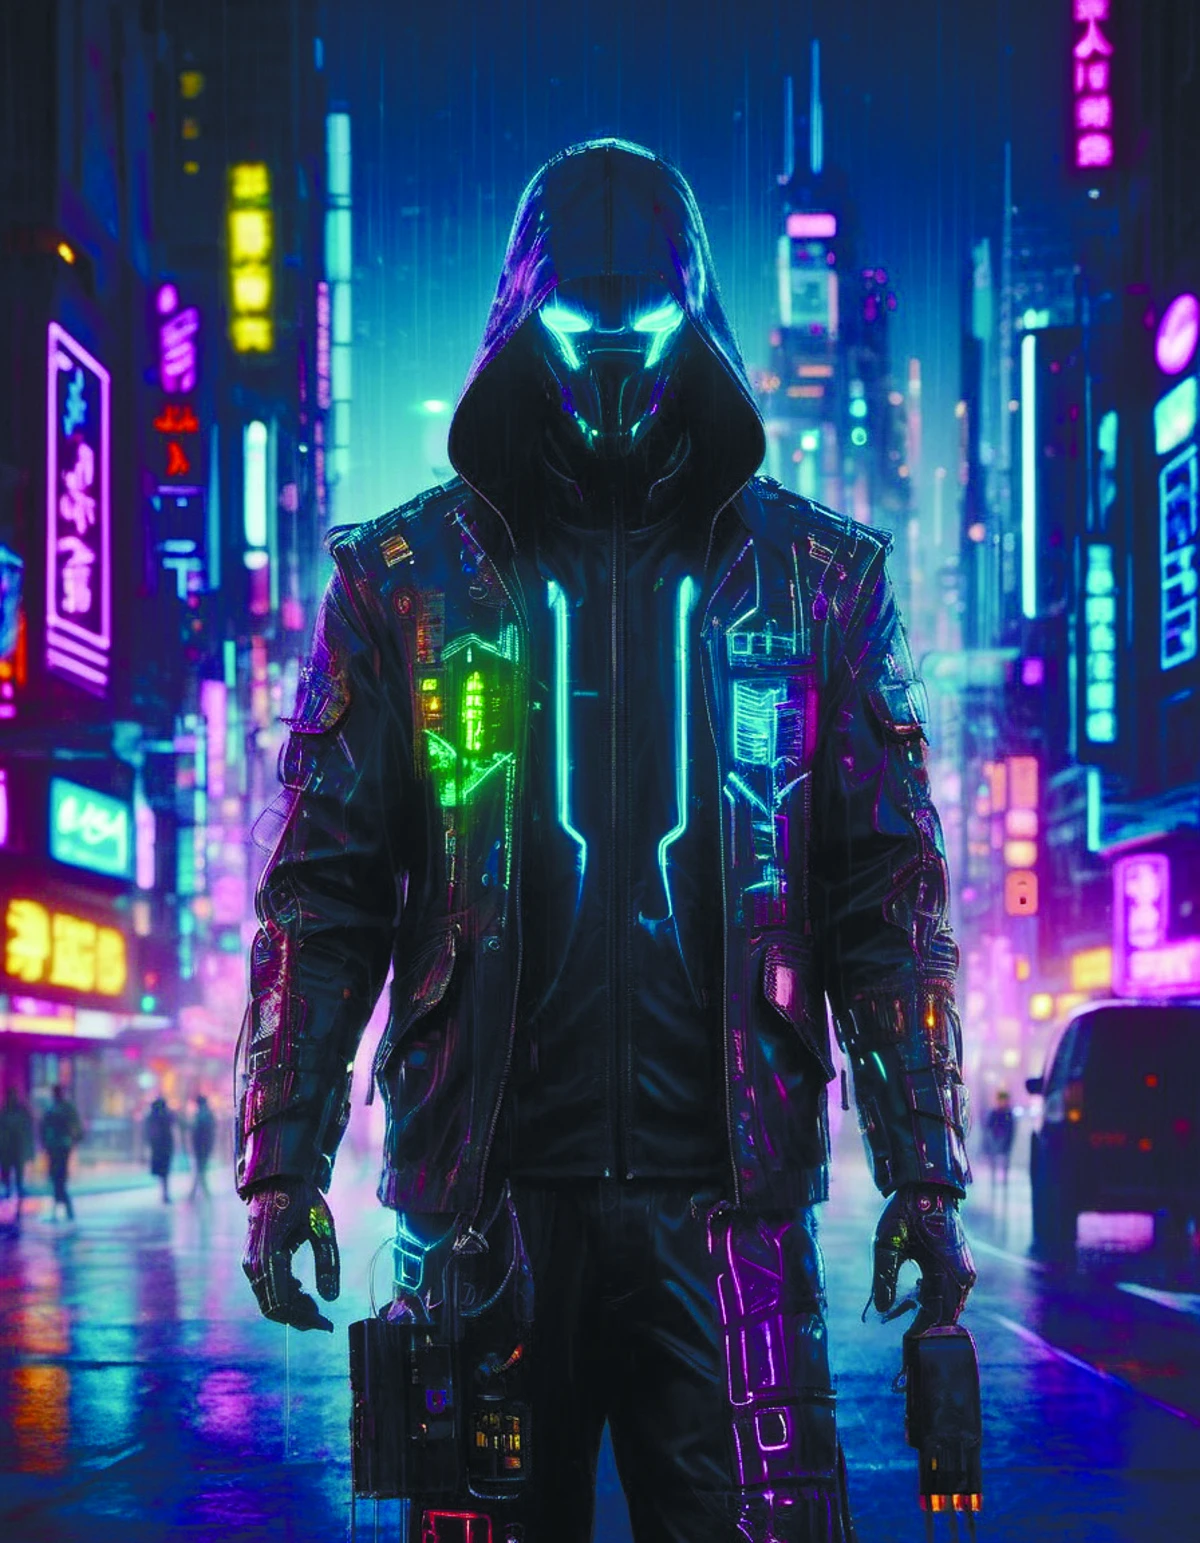 desenho digital de um personagem cyberpunk cidade neon à noite chuva ilustração digital cyberpukai teslapunkai por diegocr